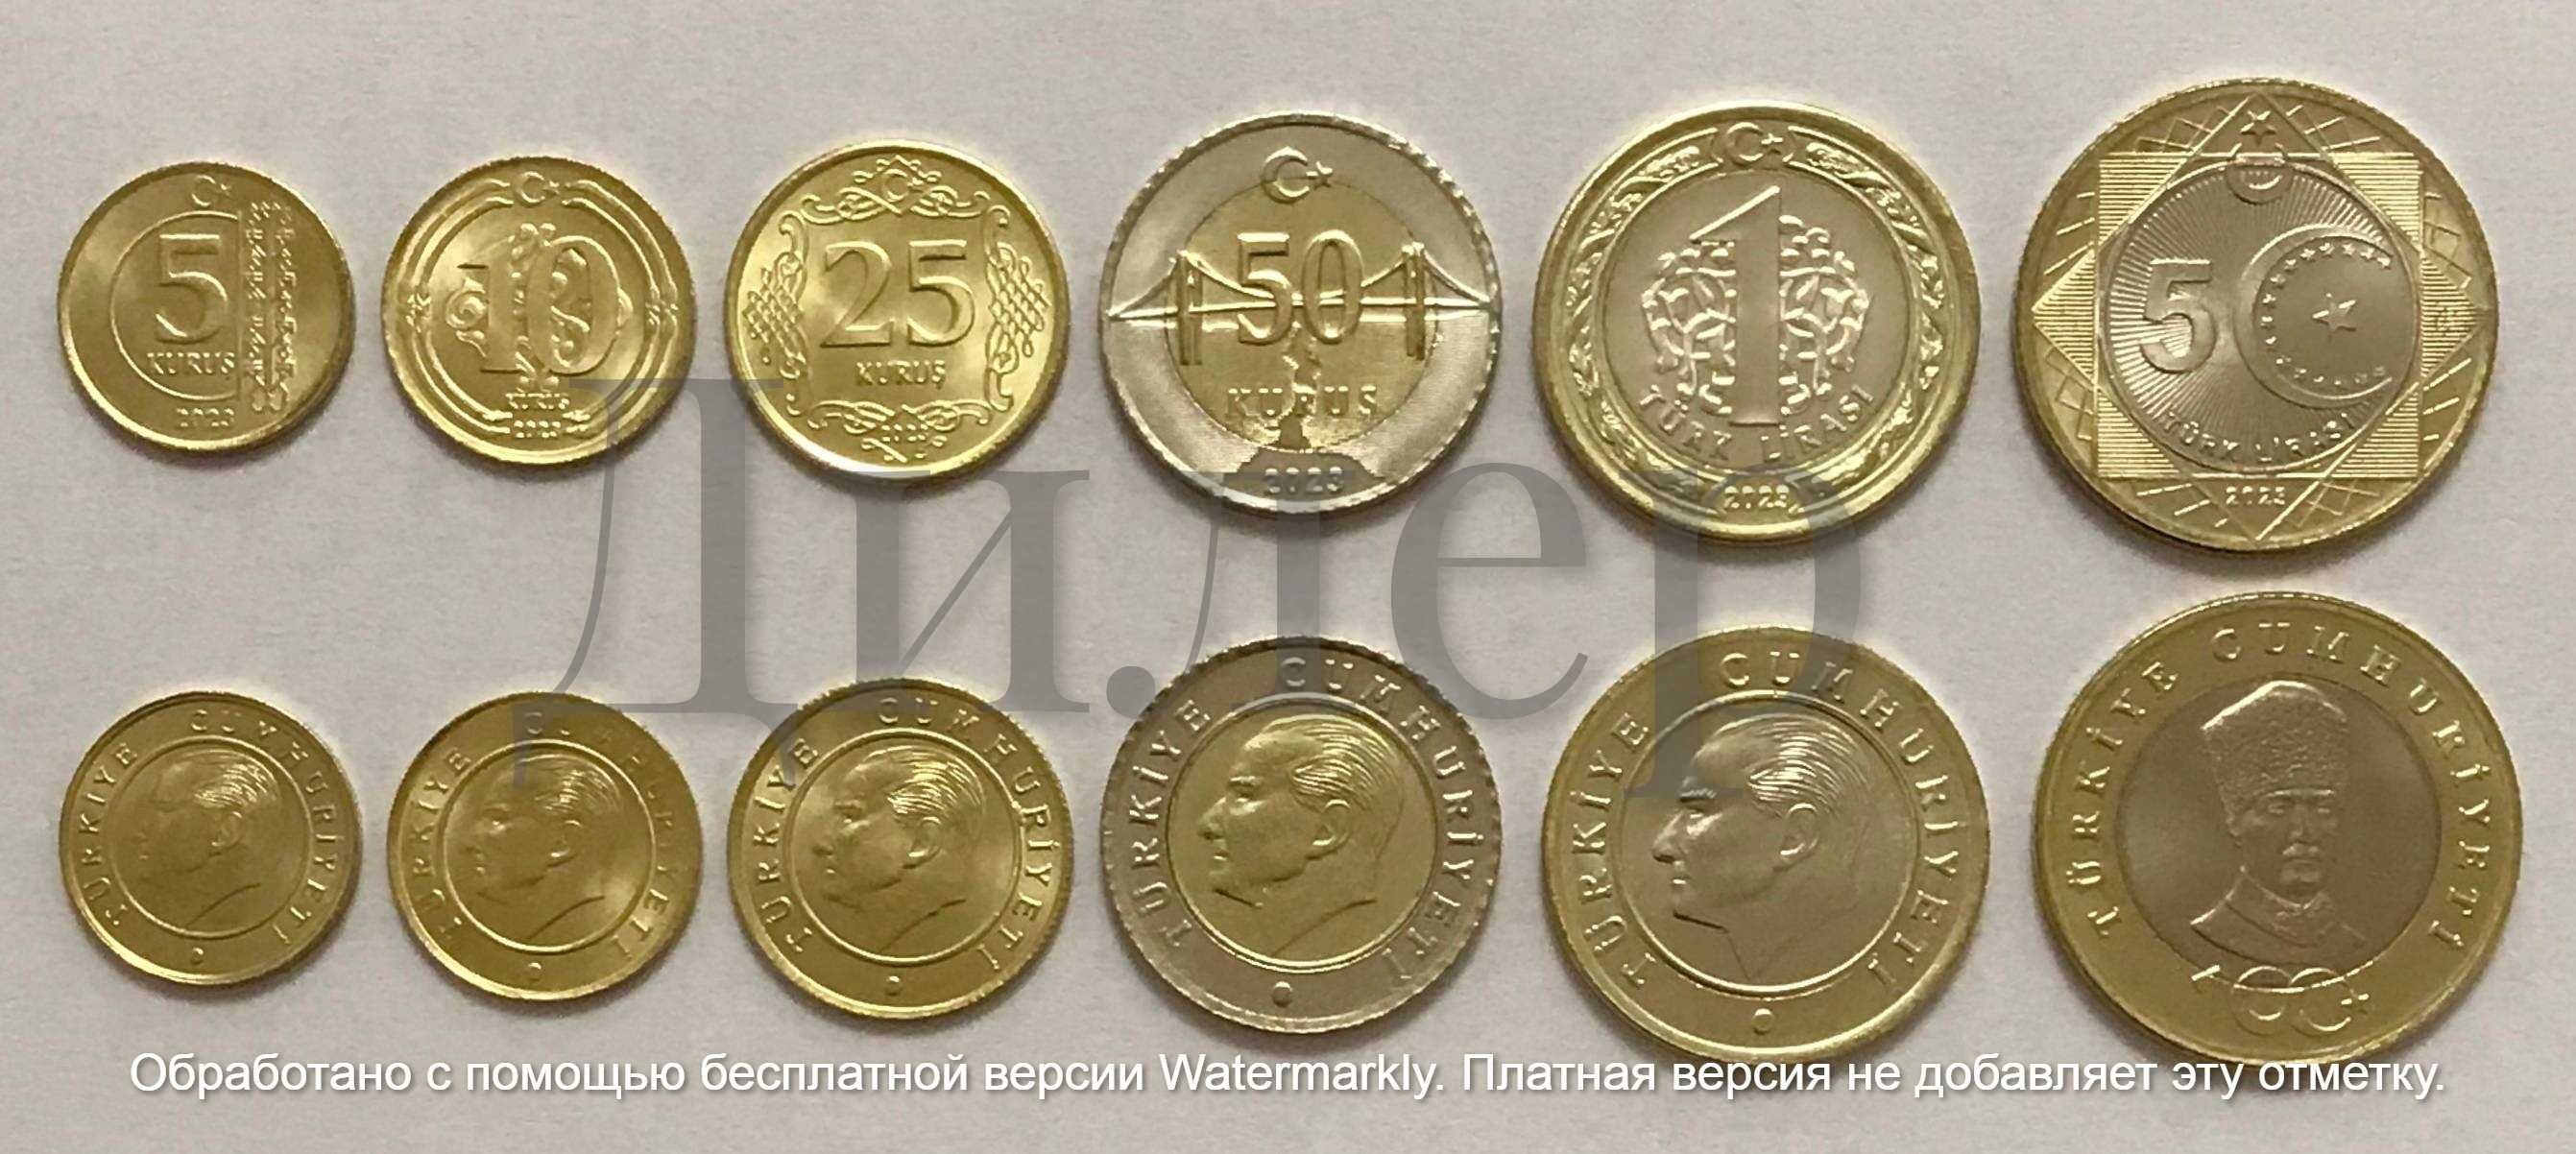 Наборы монет (Пакистан, Афганистан, Иран, Ирак, Киргизия и др.) UNC